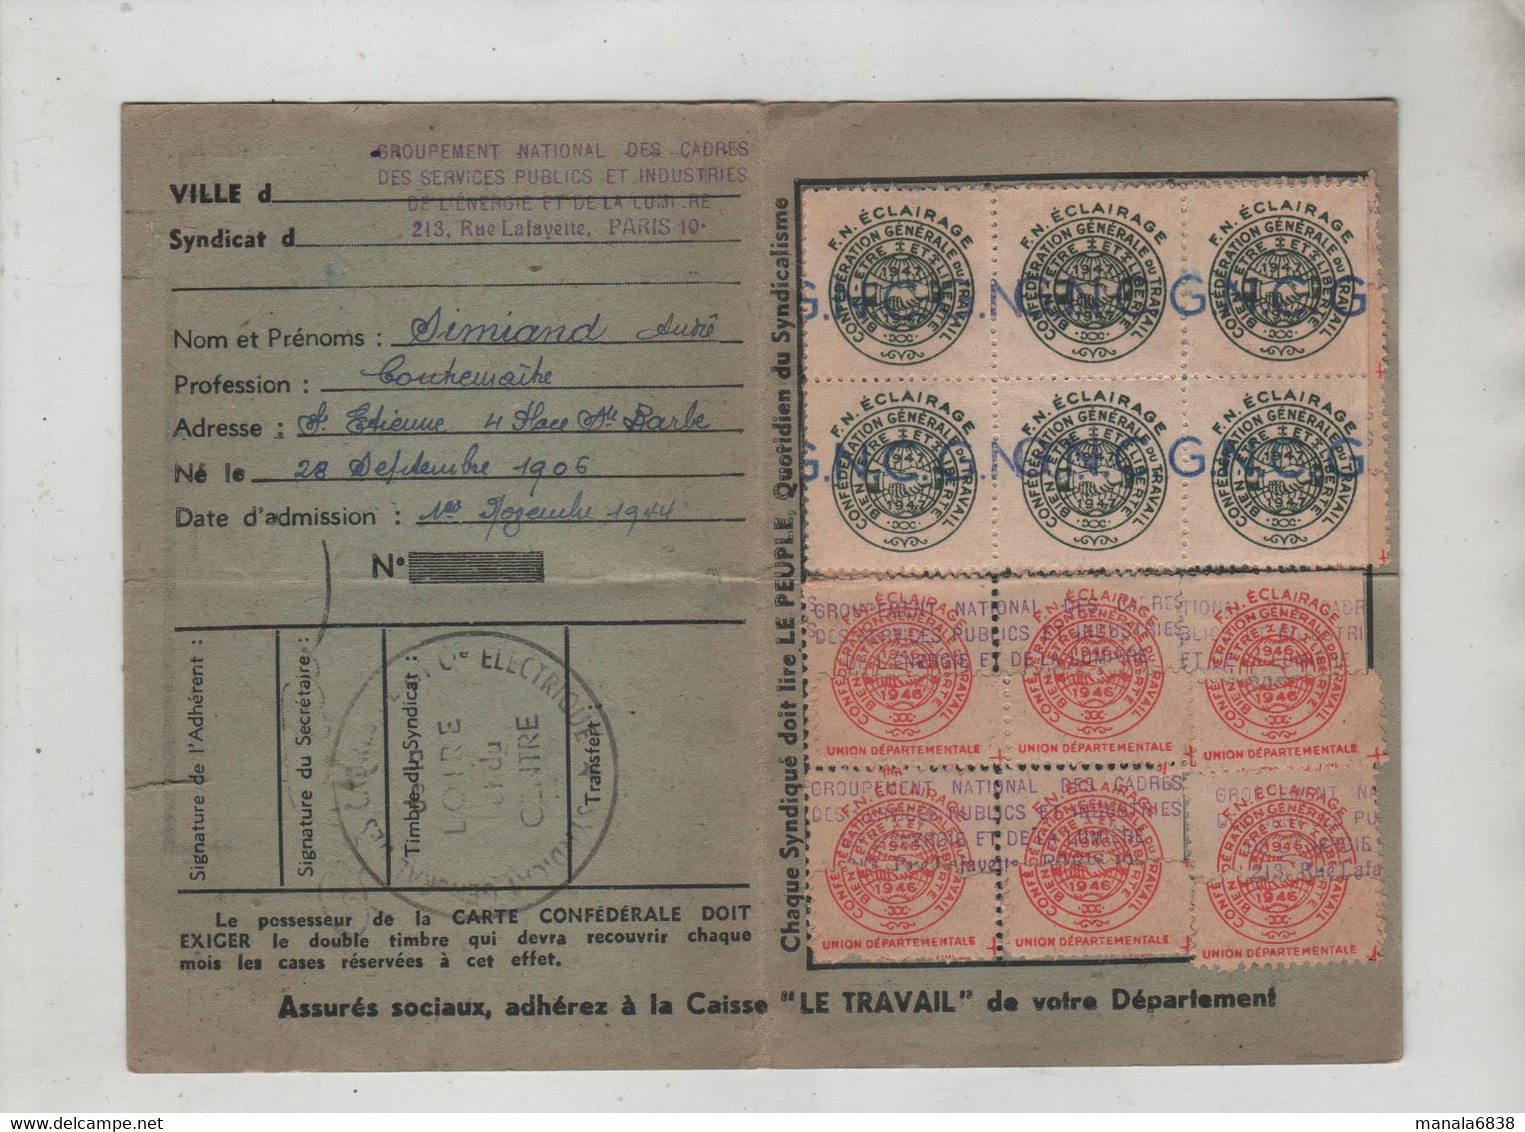 Carte Confédérale 1946 CGT Simiand Saint Etienne - Membership Cards